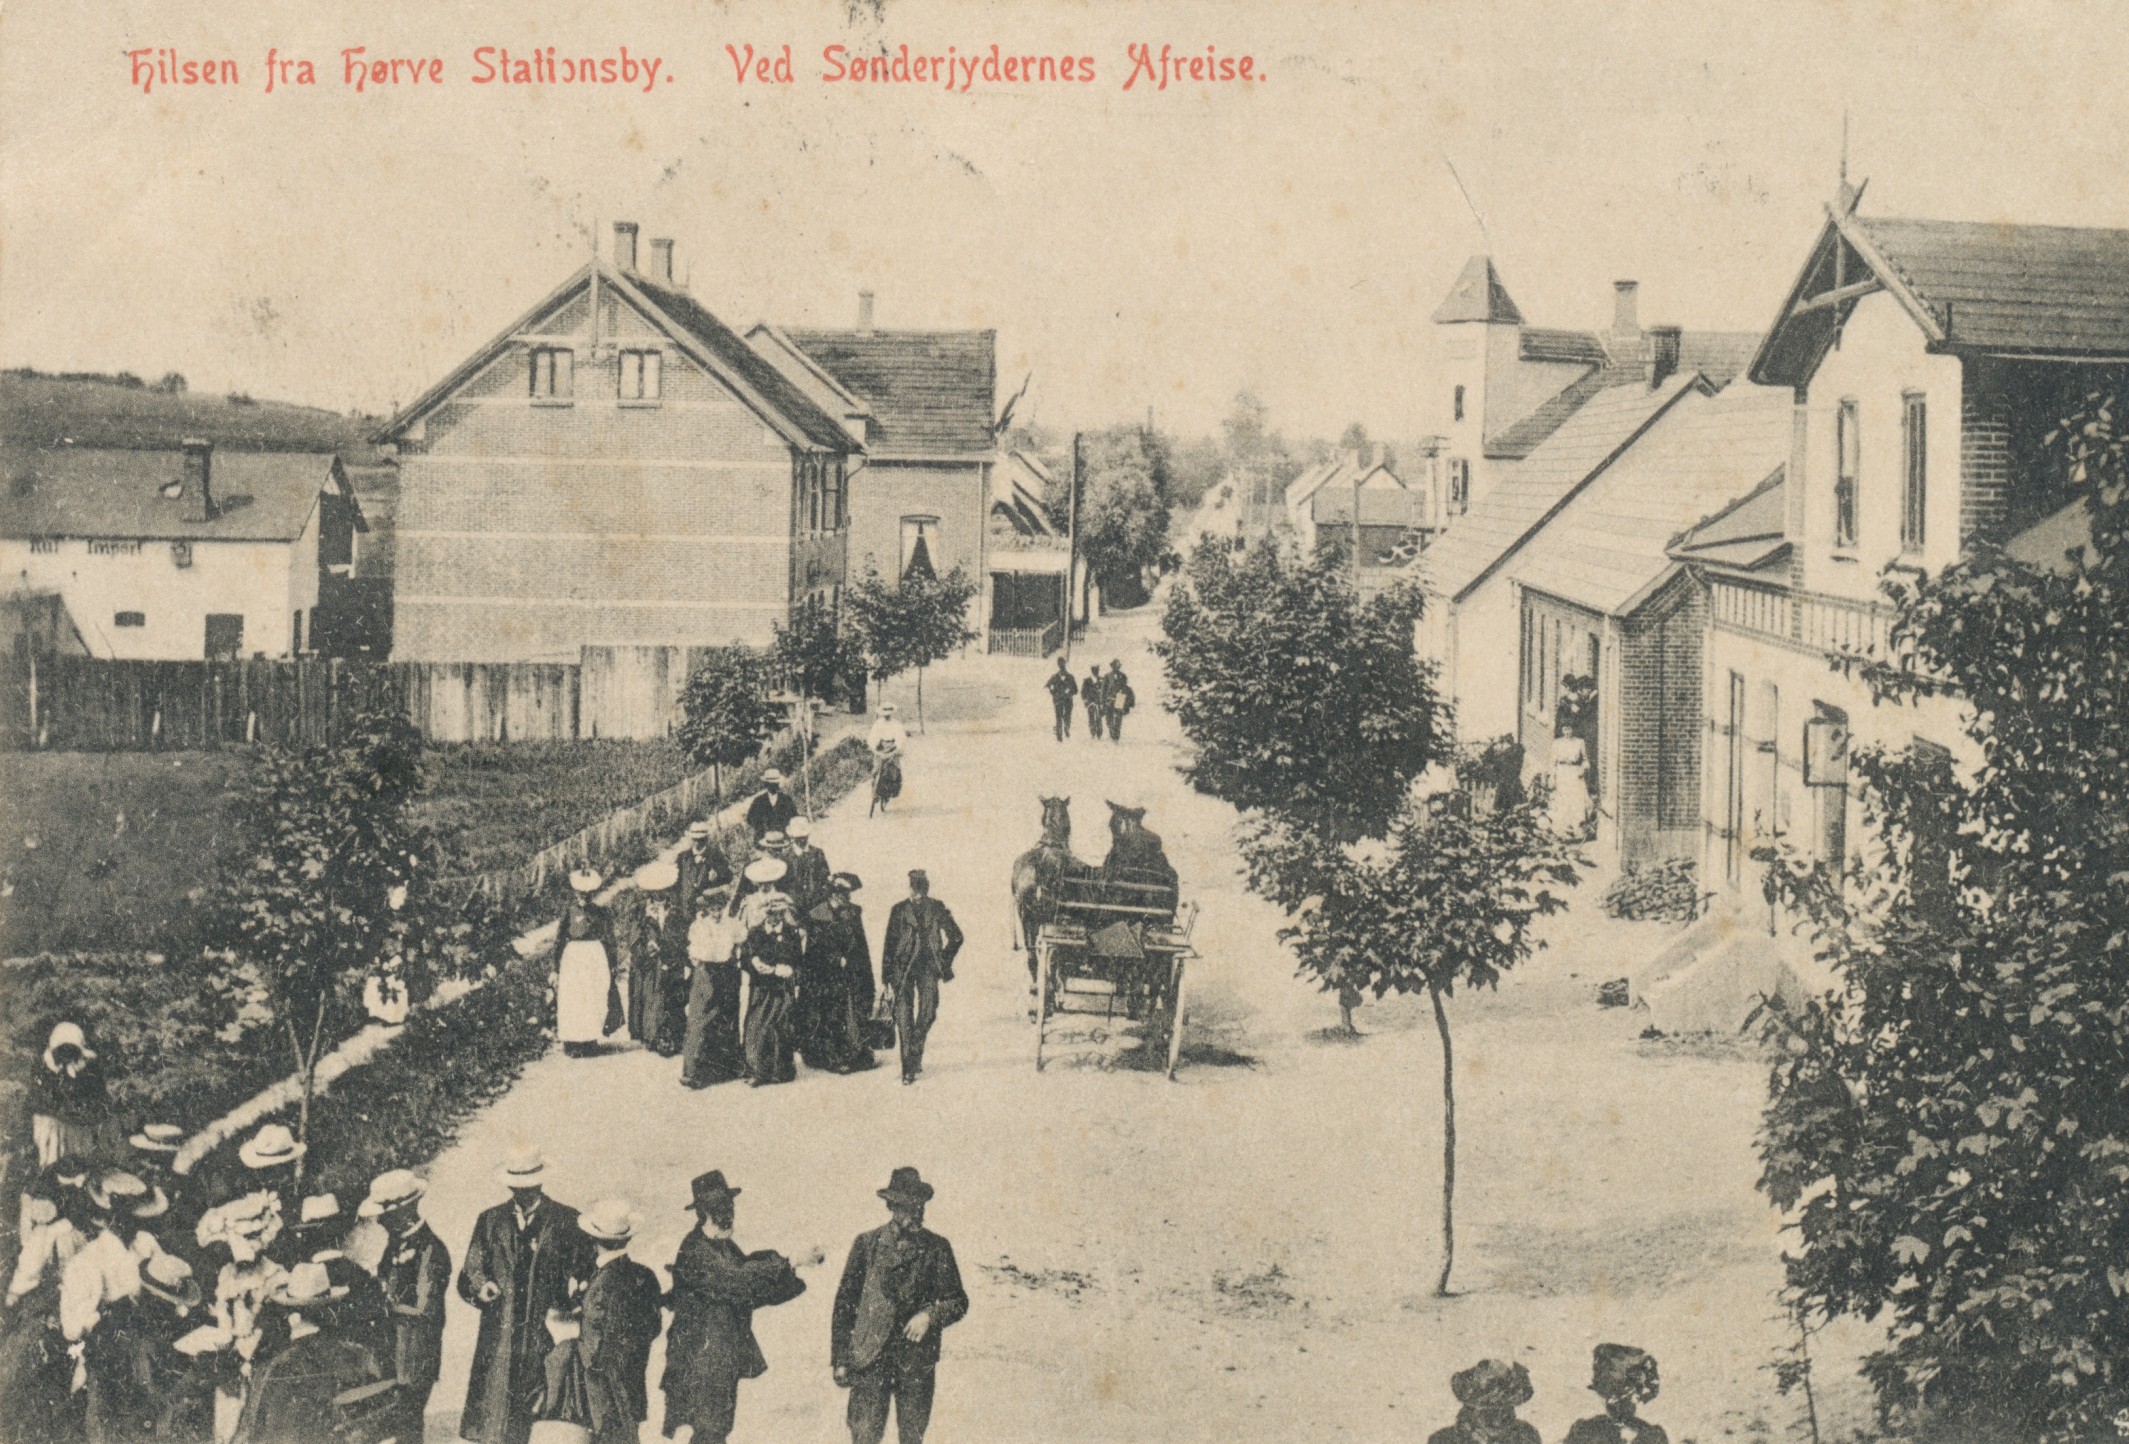 Hilsen fra Hørve Stationsby - ca. 1908 (B3716)